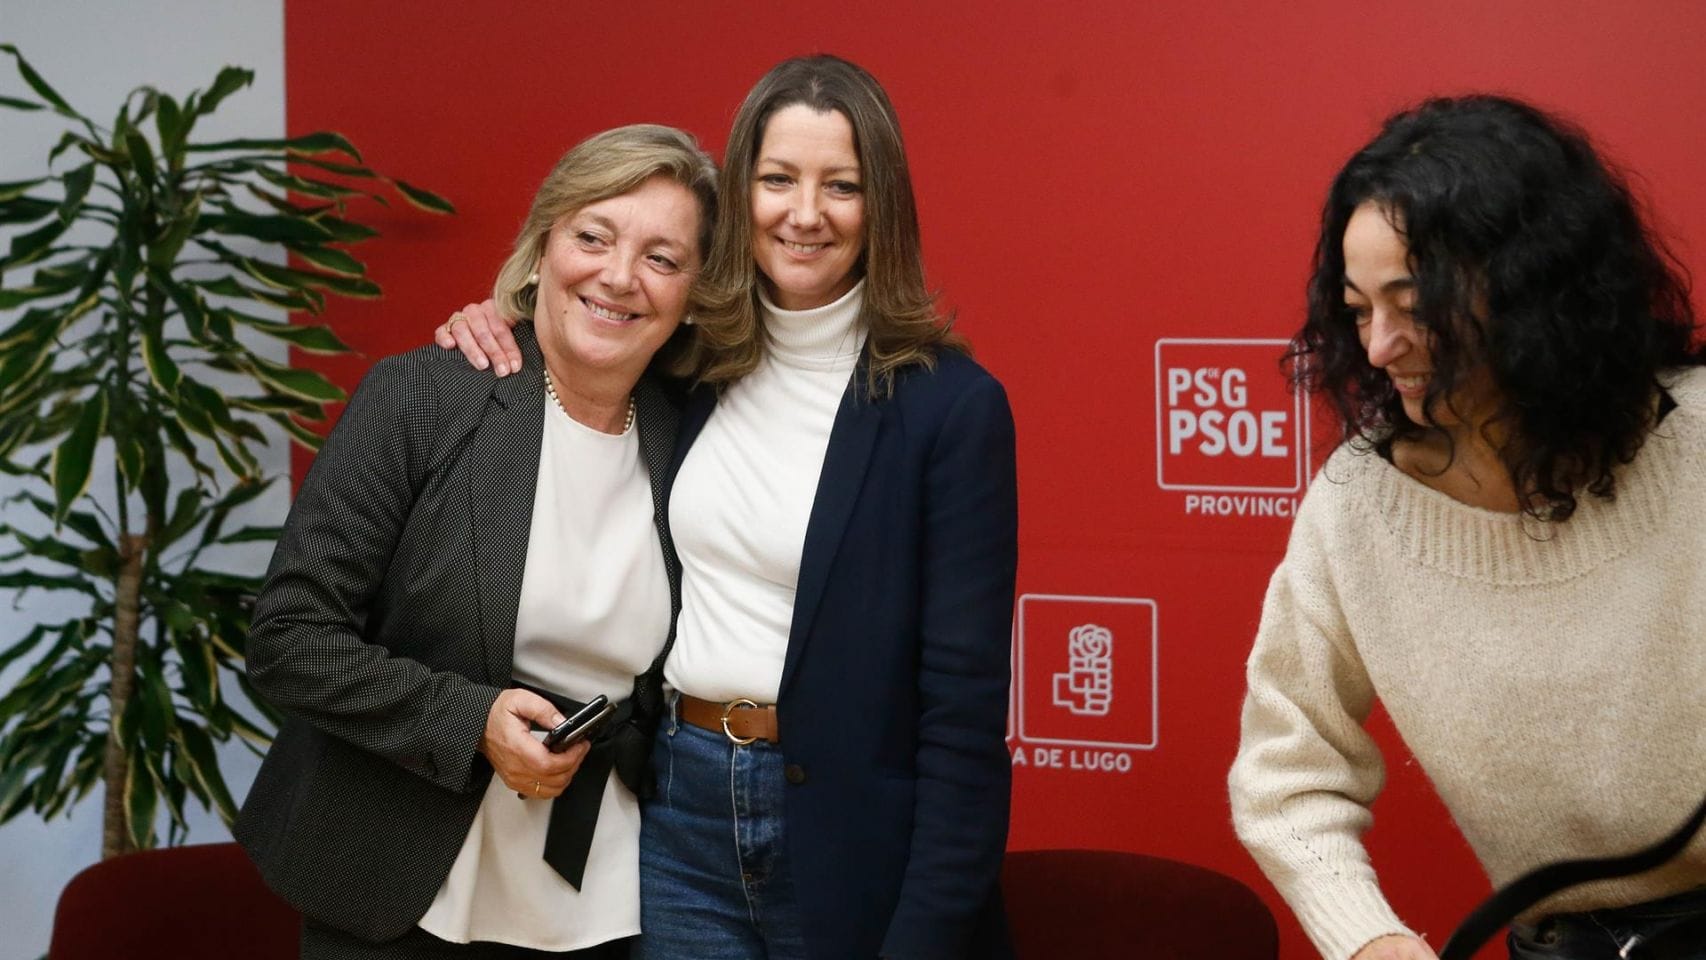 La concejala de Urbanismo en el Ayuntamiento de Lugo, Paula Alvarellos, acompaña a Lara Méndez el día que anunció su renuncia.